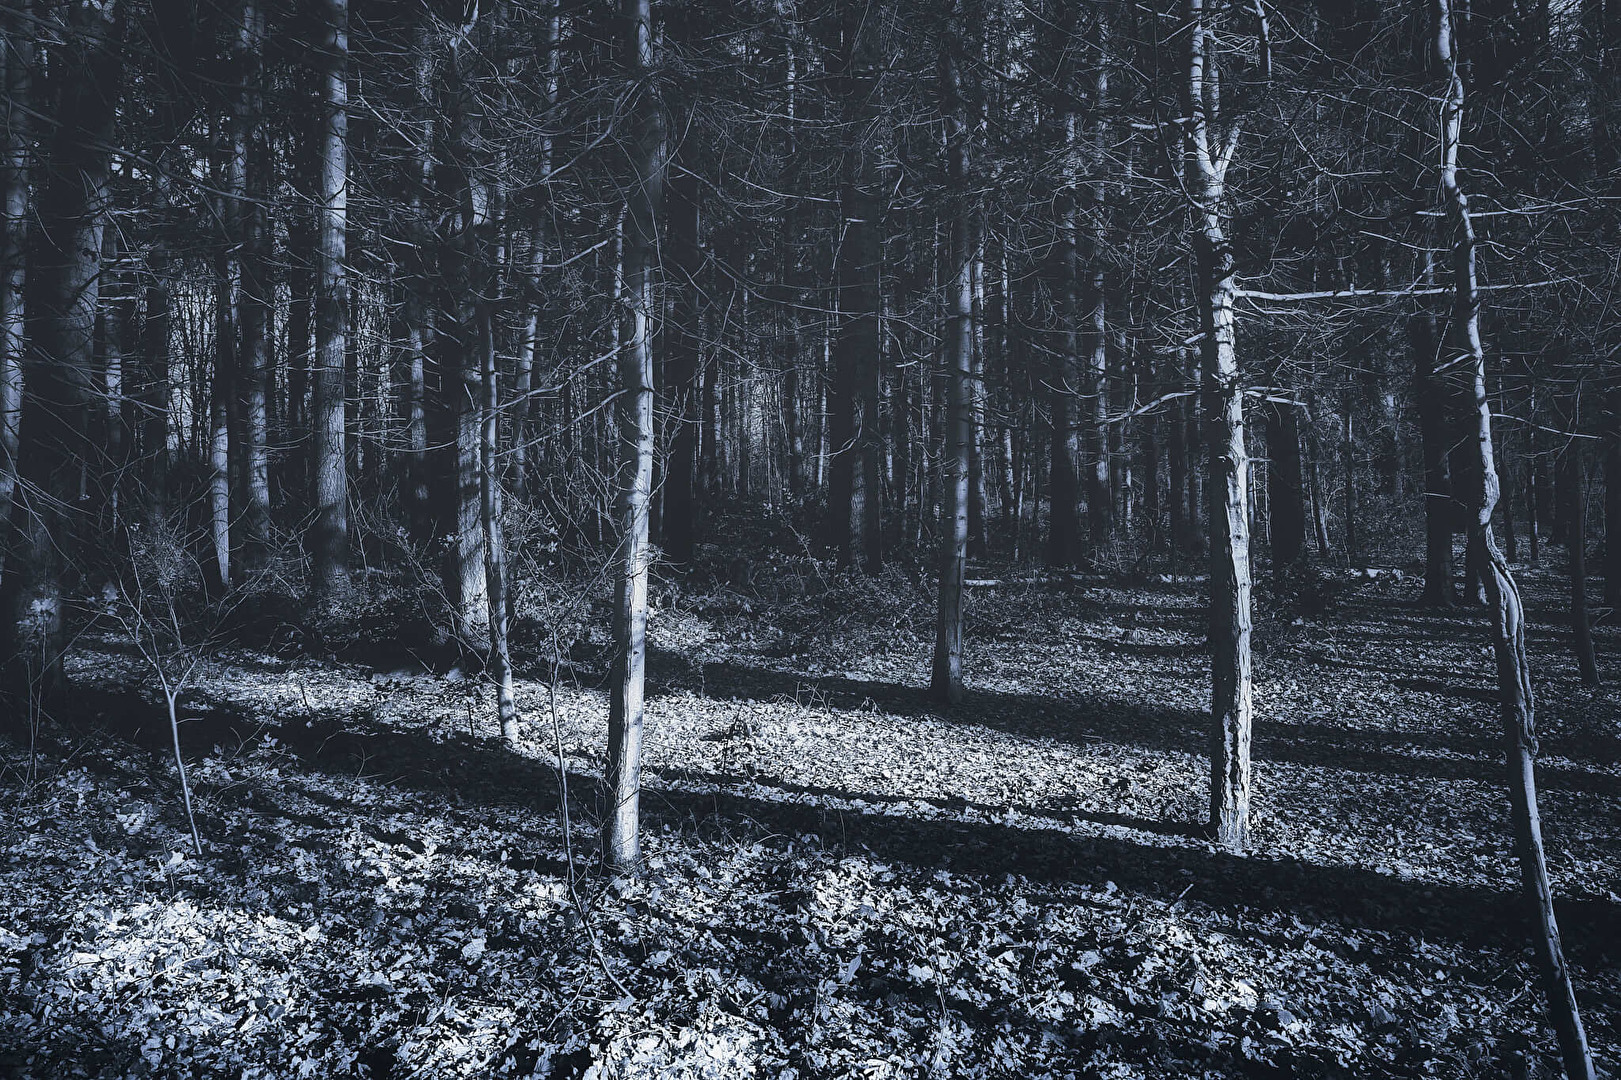 Mystischer Wald in Schwarz - Weiss